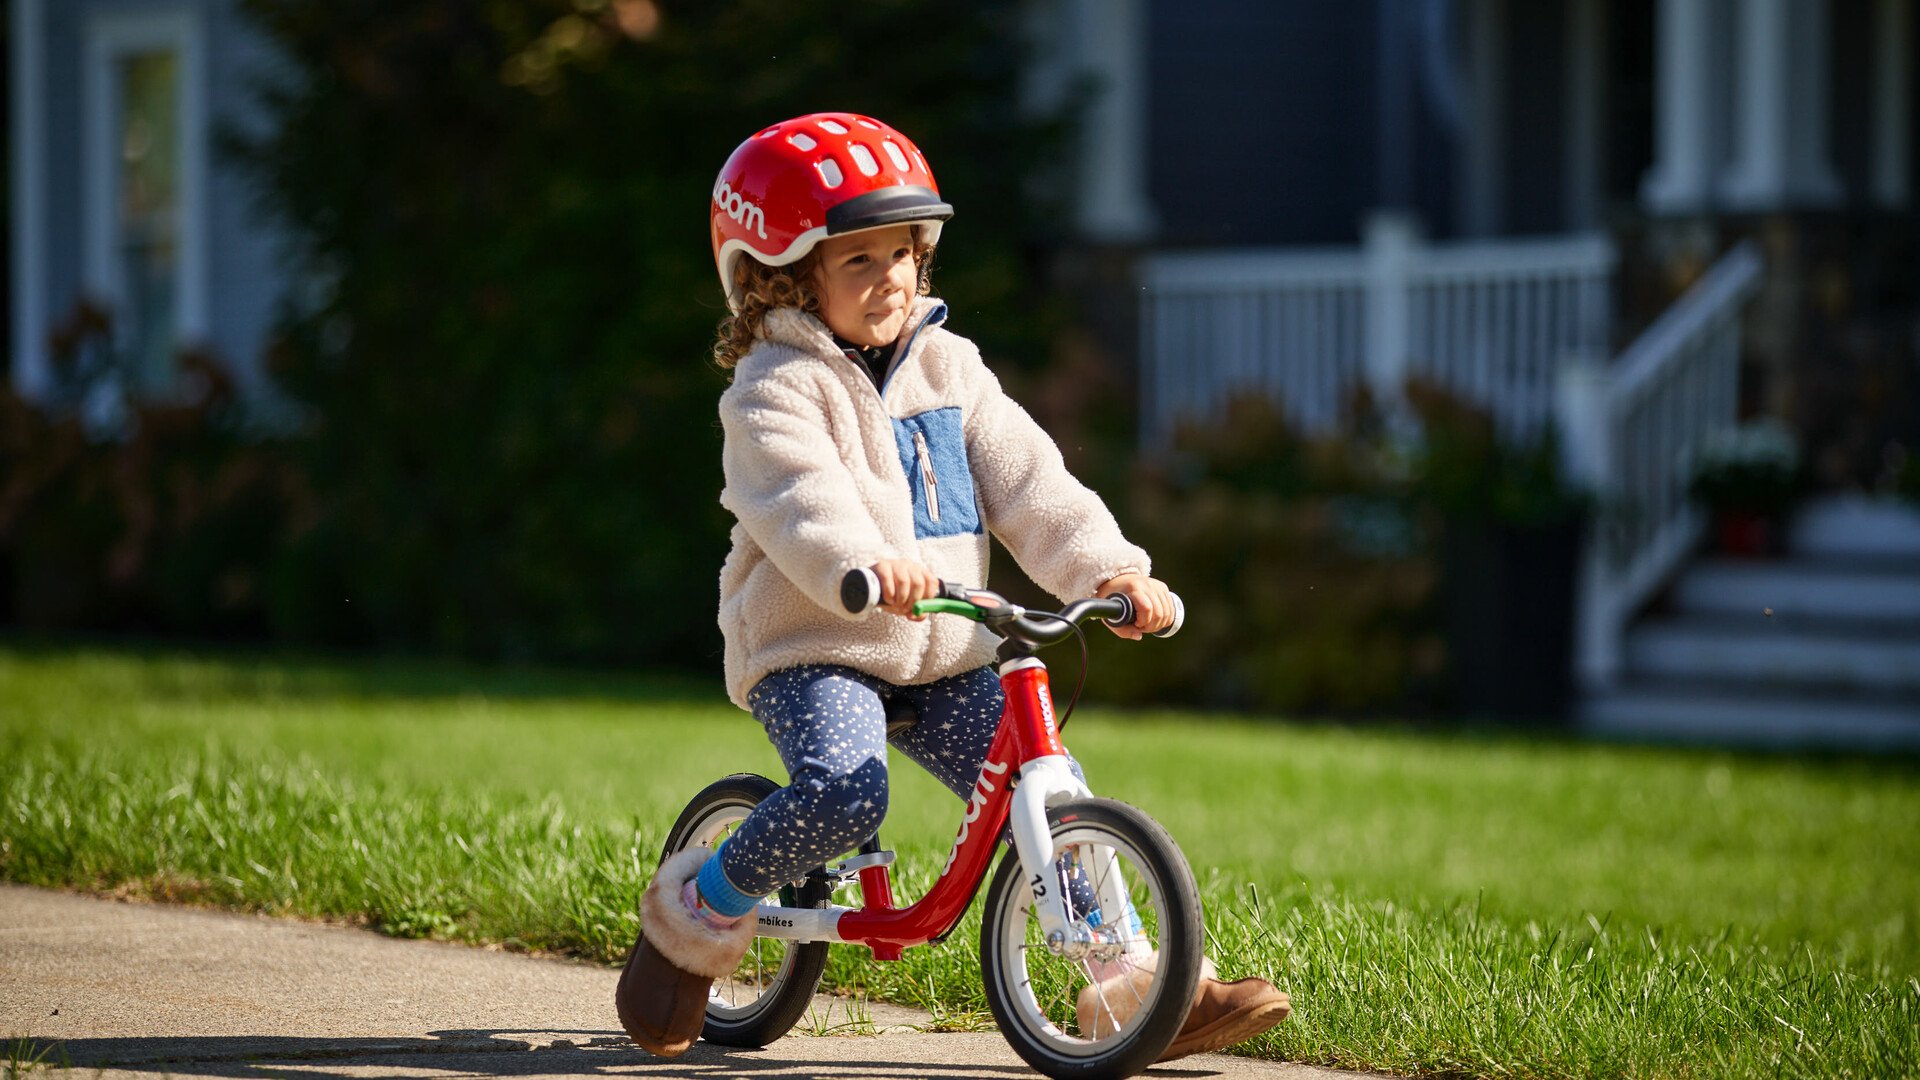 Ett lyckligt småbarn med röd hjälm och röd balanscykel av märket woom kommer körande på trottoaren.